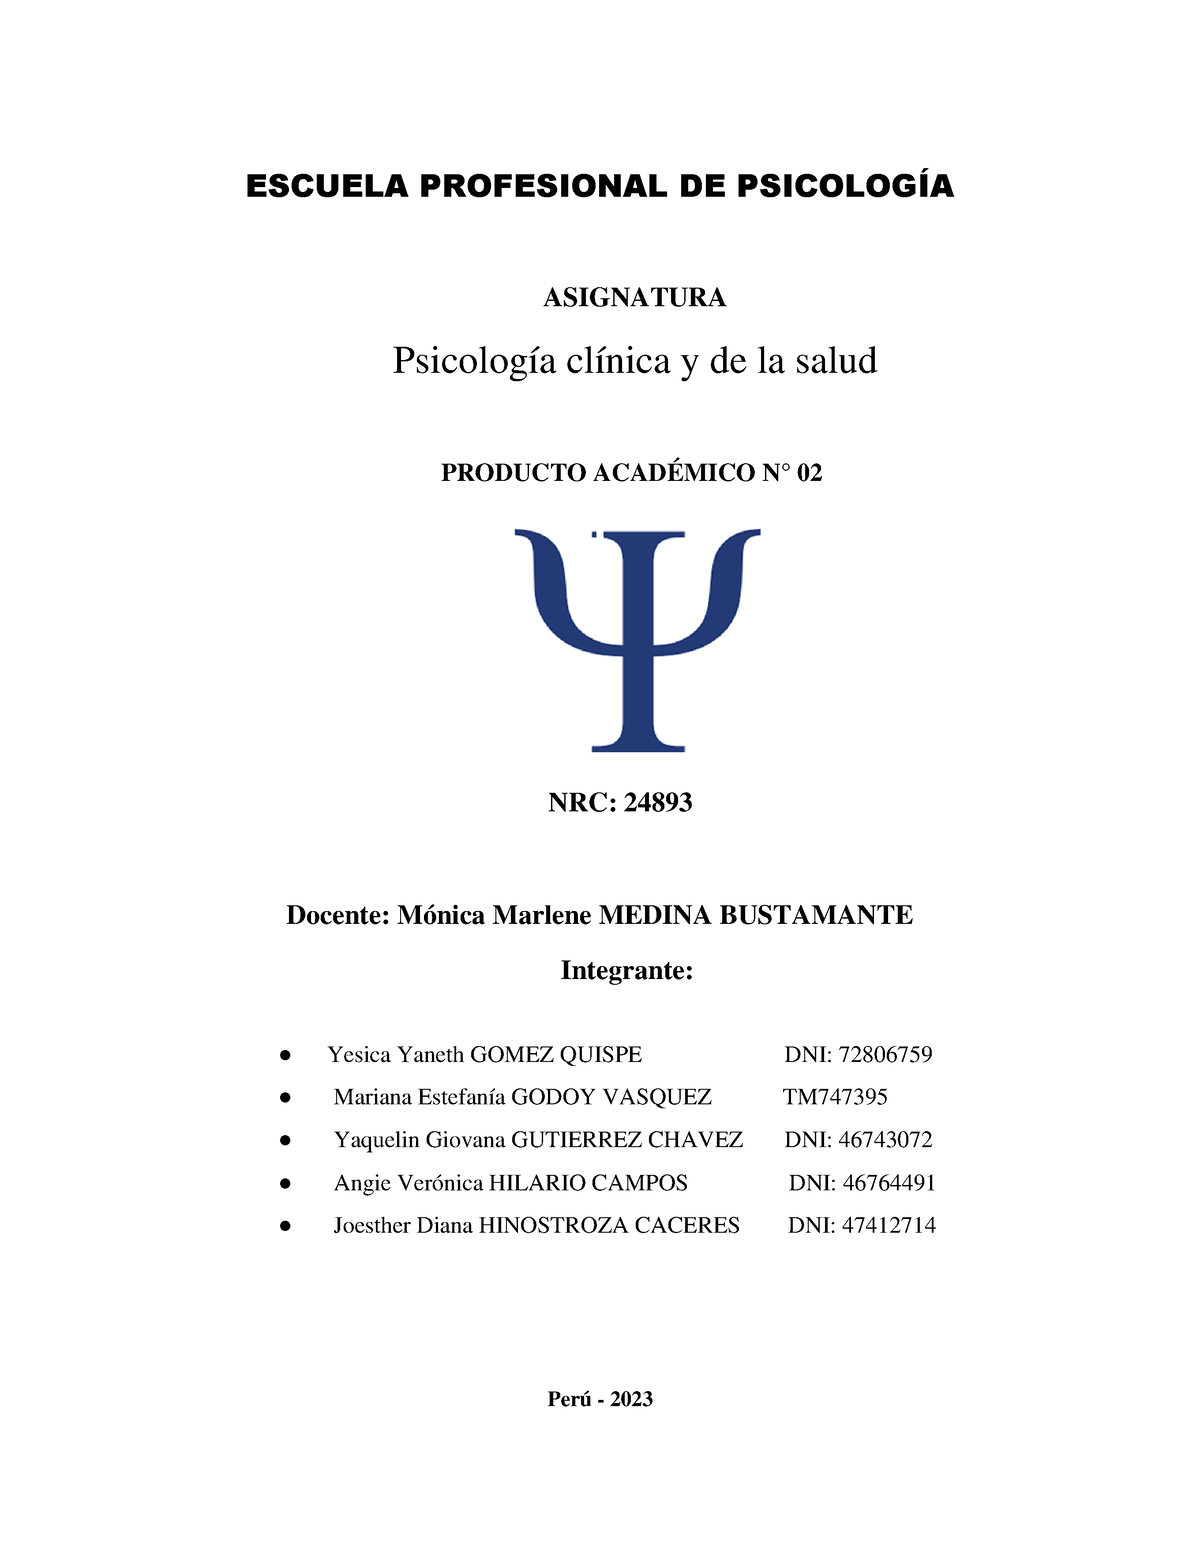 Pa2 Psico Clinica Y De La Salud Escuela Profesional De PsicologÕa 4834